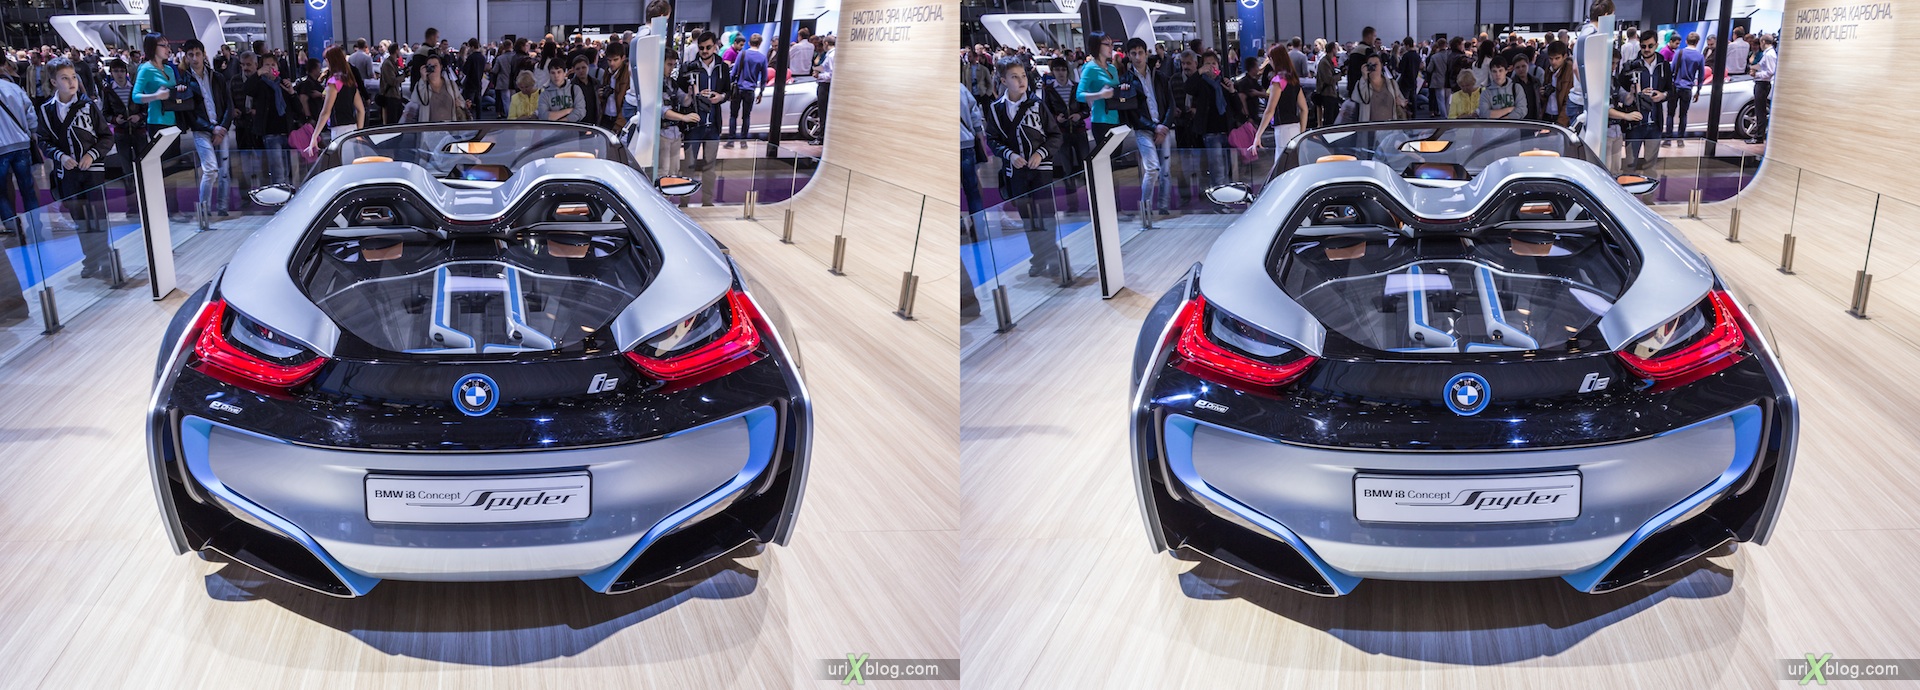 2012, BMW i8 Concept Spyder, Московский международный автомобильный салон, ММАС, Крокус Экспо, 3D, стерео, стереопара